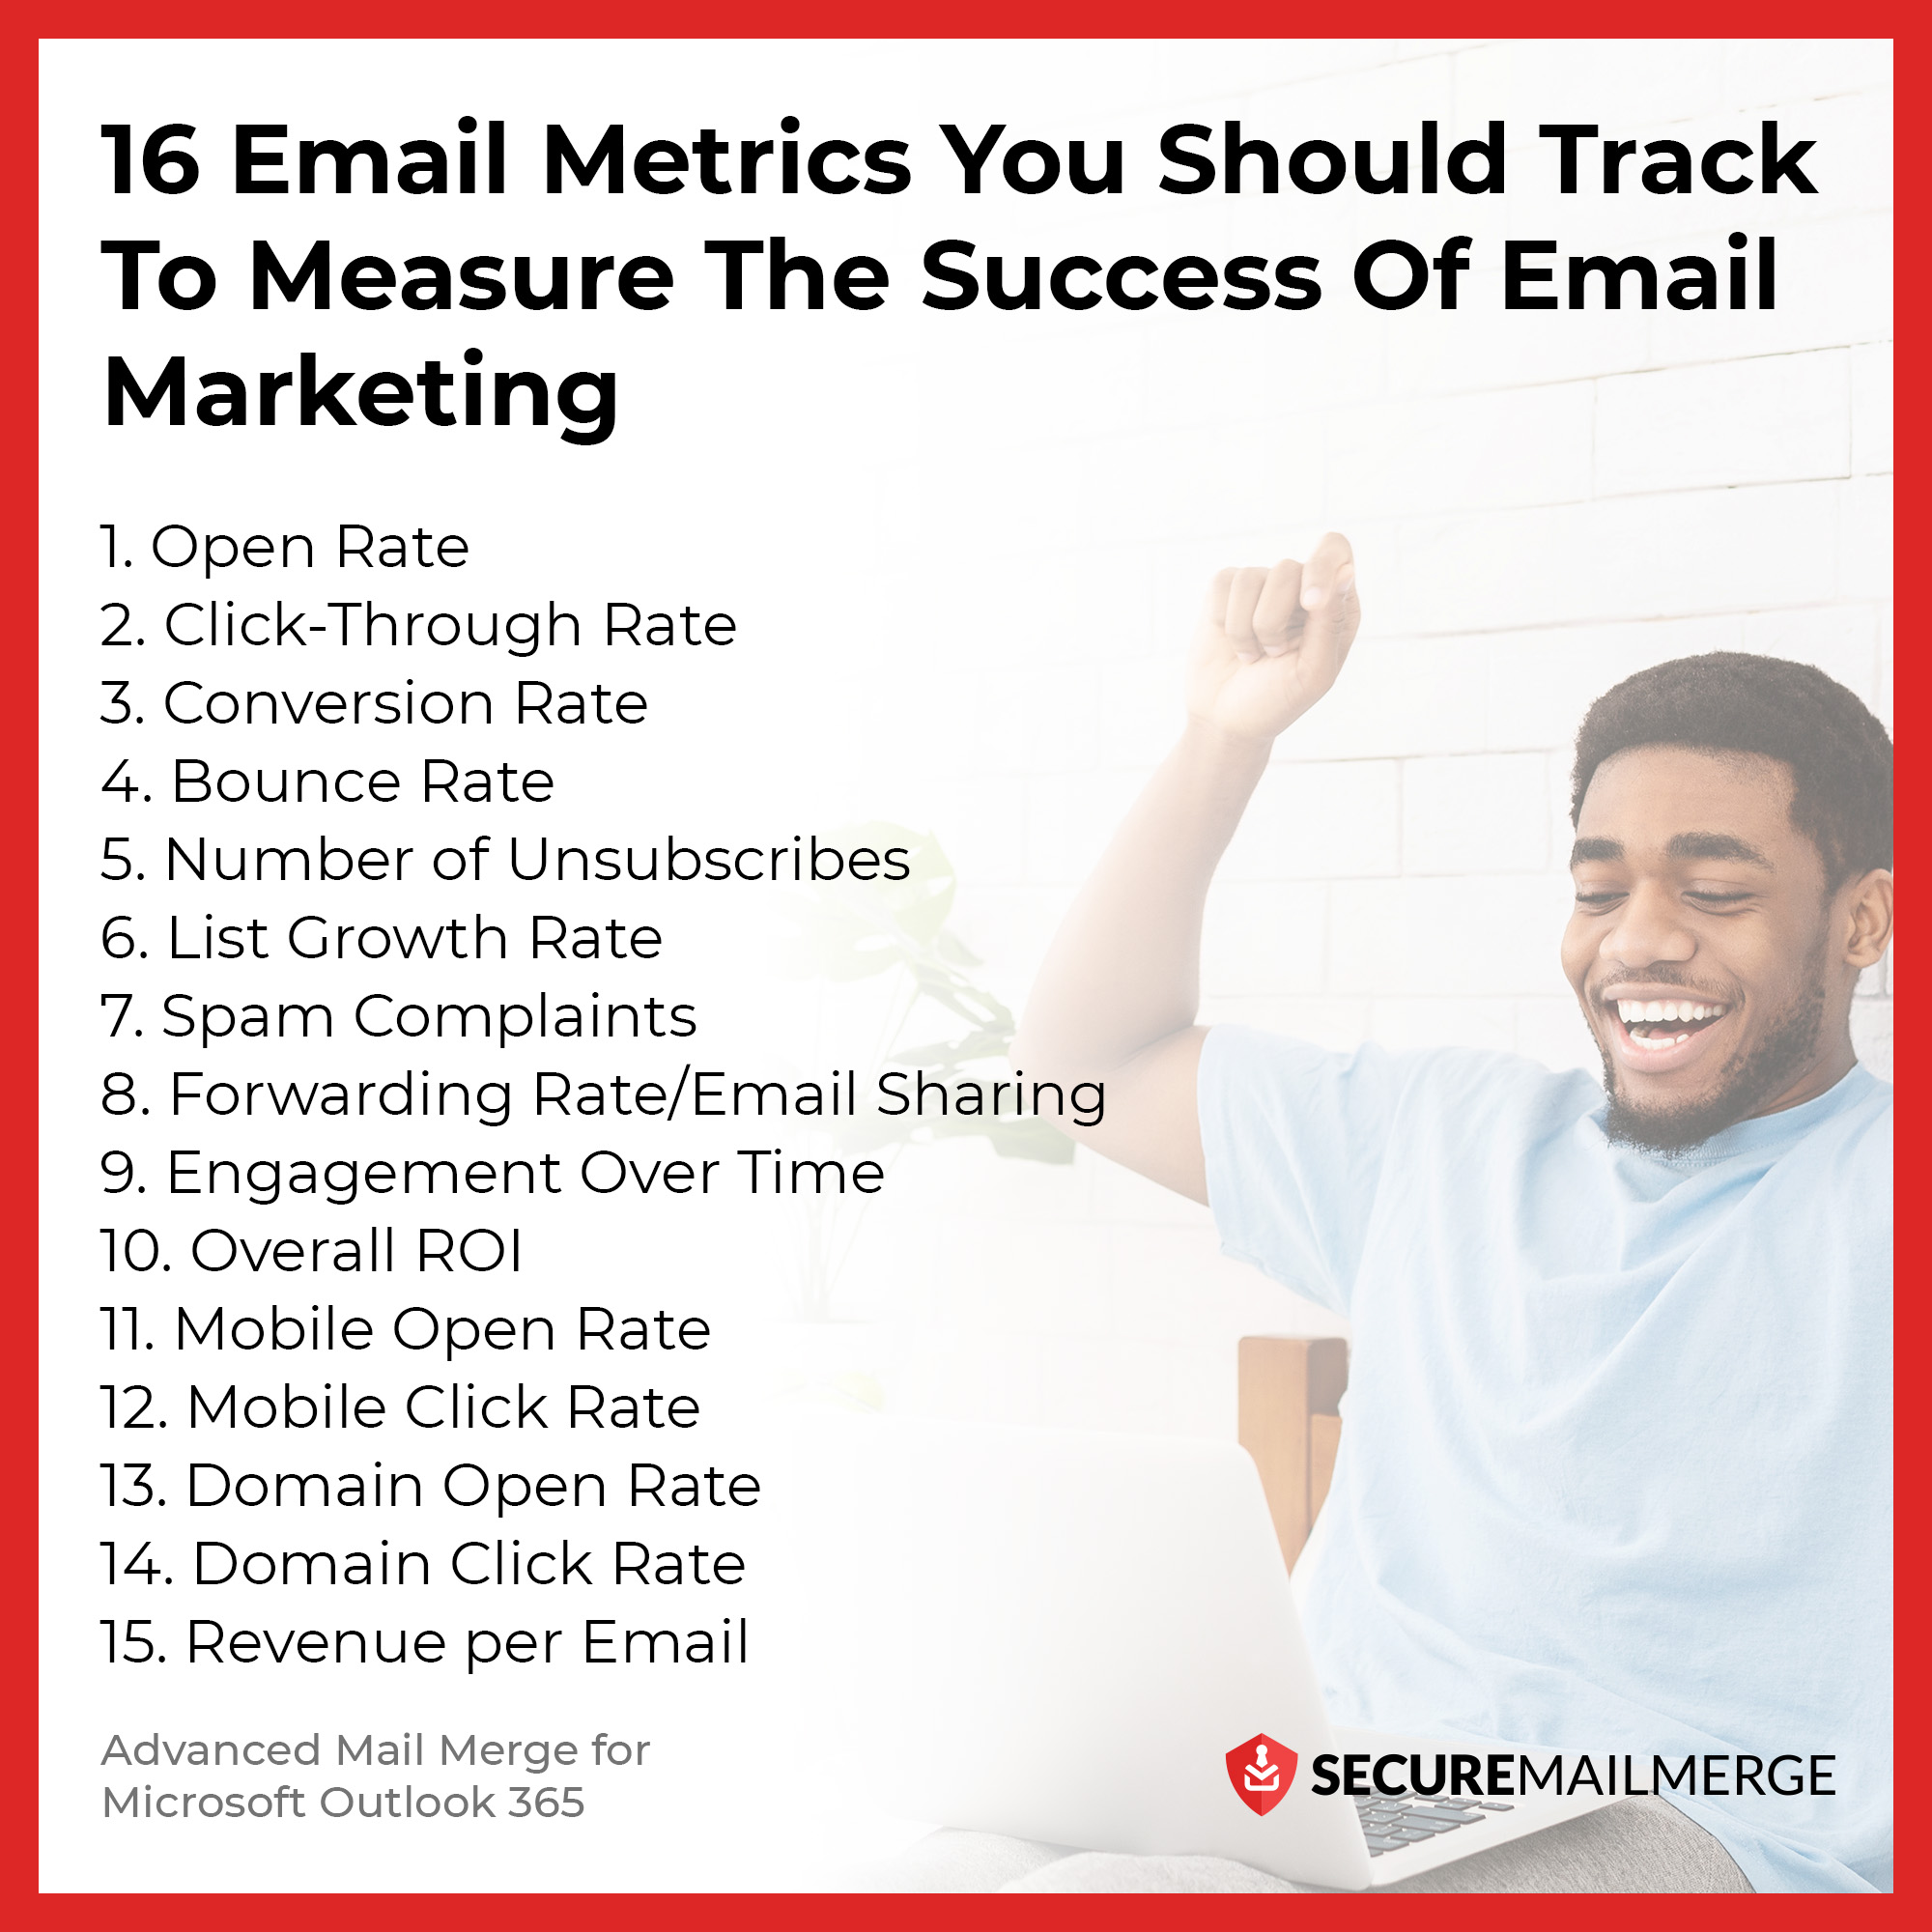 16 métricas de correo electrónico que debe seguir para medir el éxito del marketing por correo electrónico